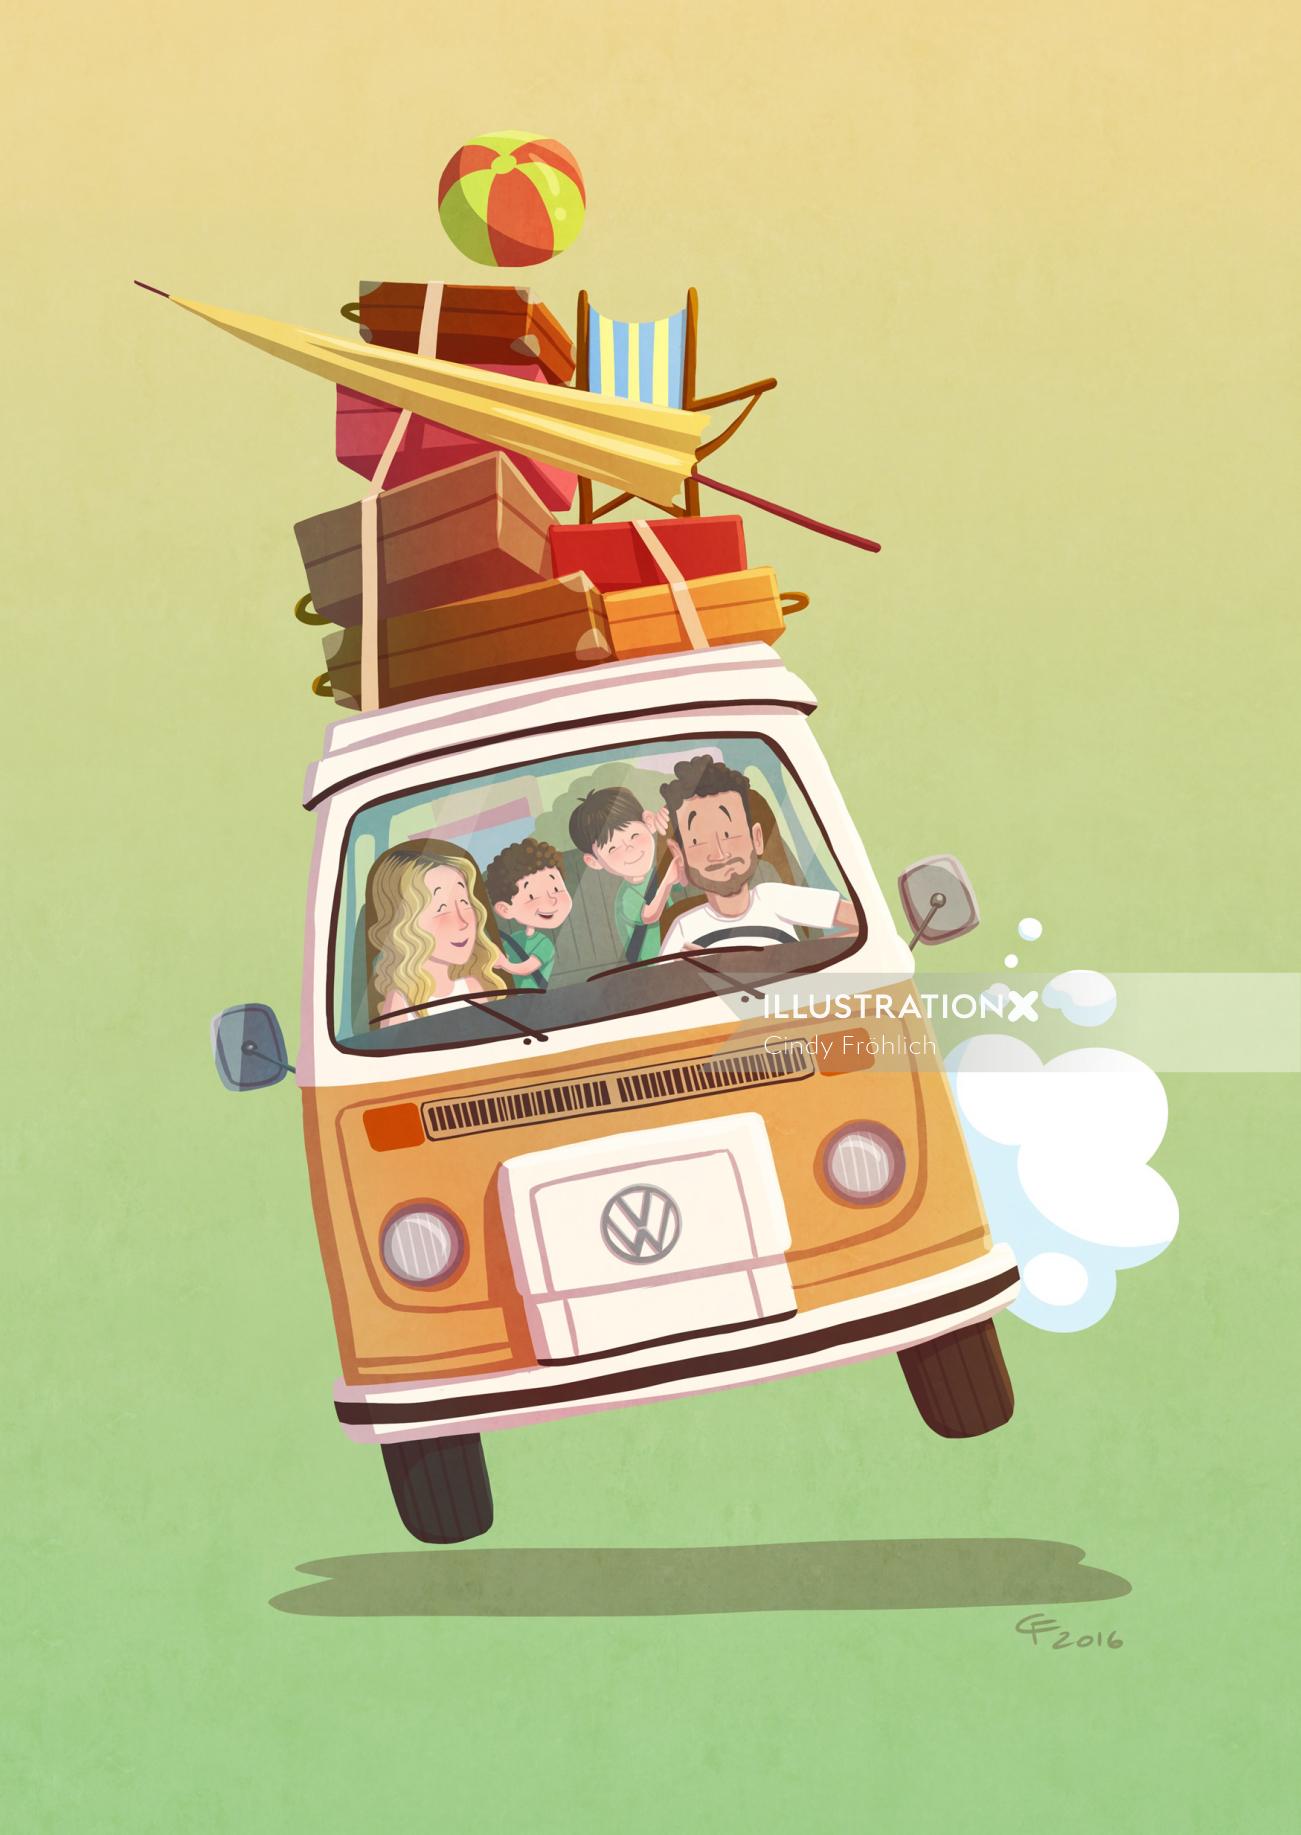 Children illustraion family in van
